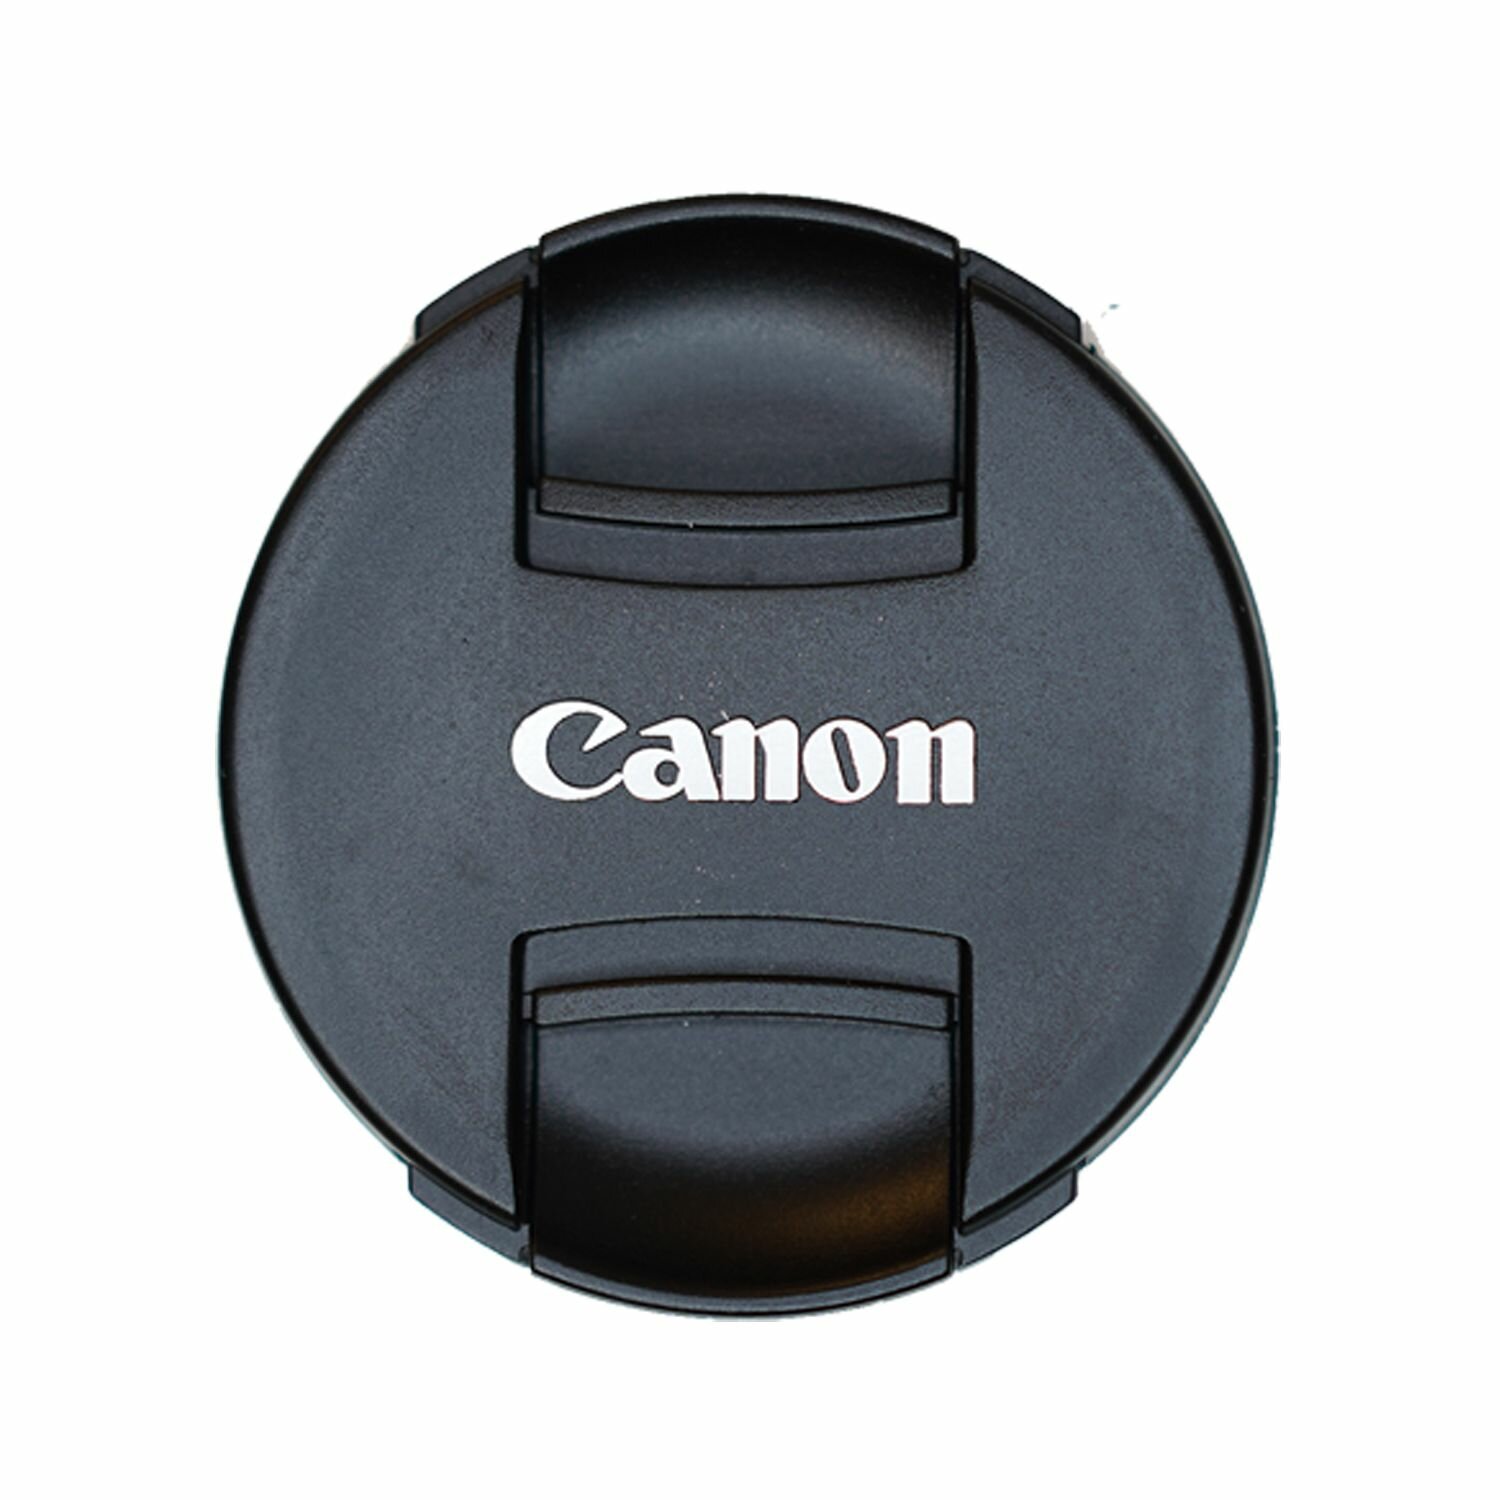 Защитная крышка 72 мм для объектива с надписью "Canon"